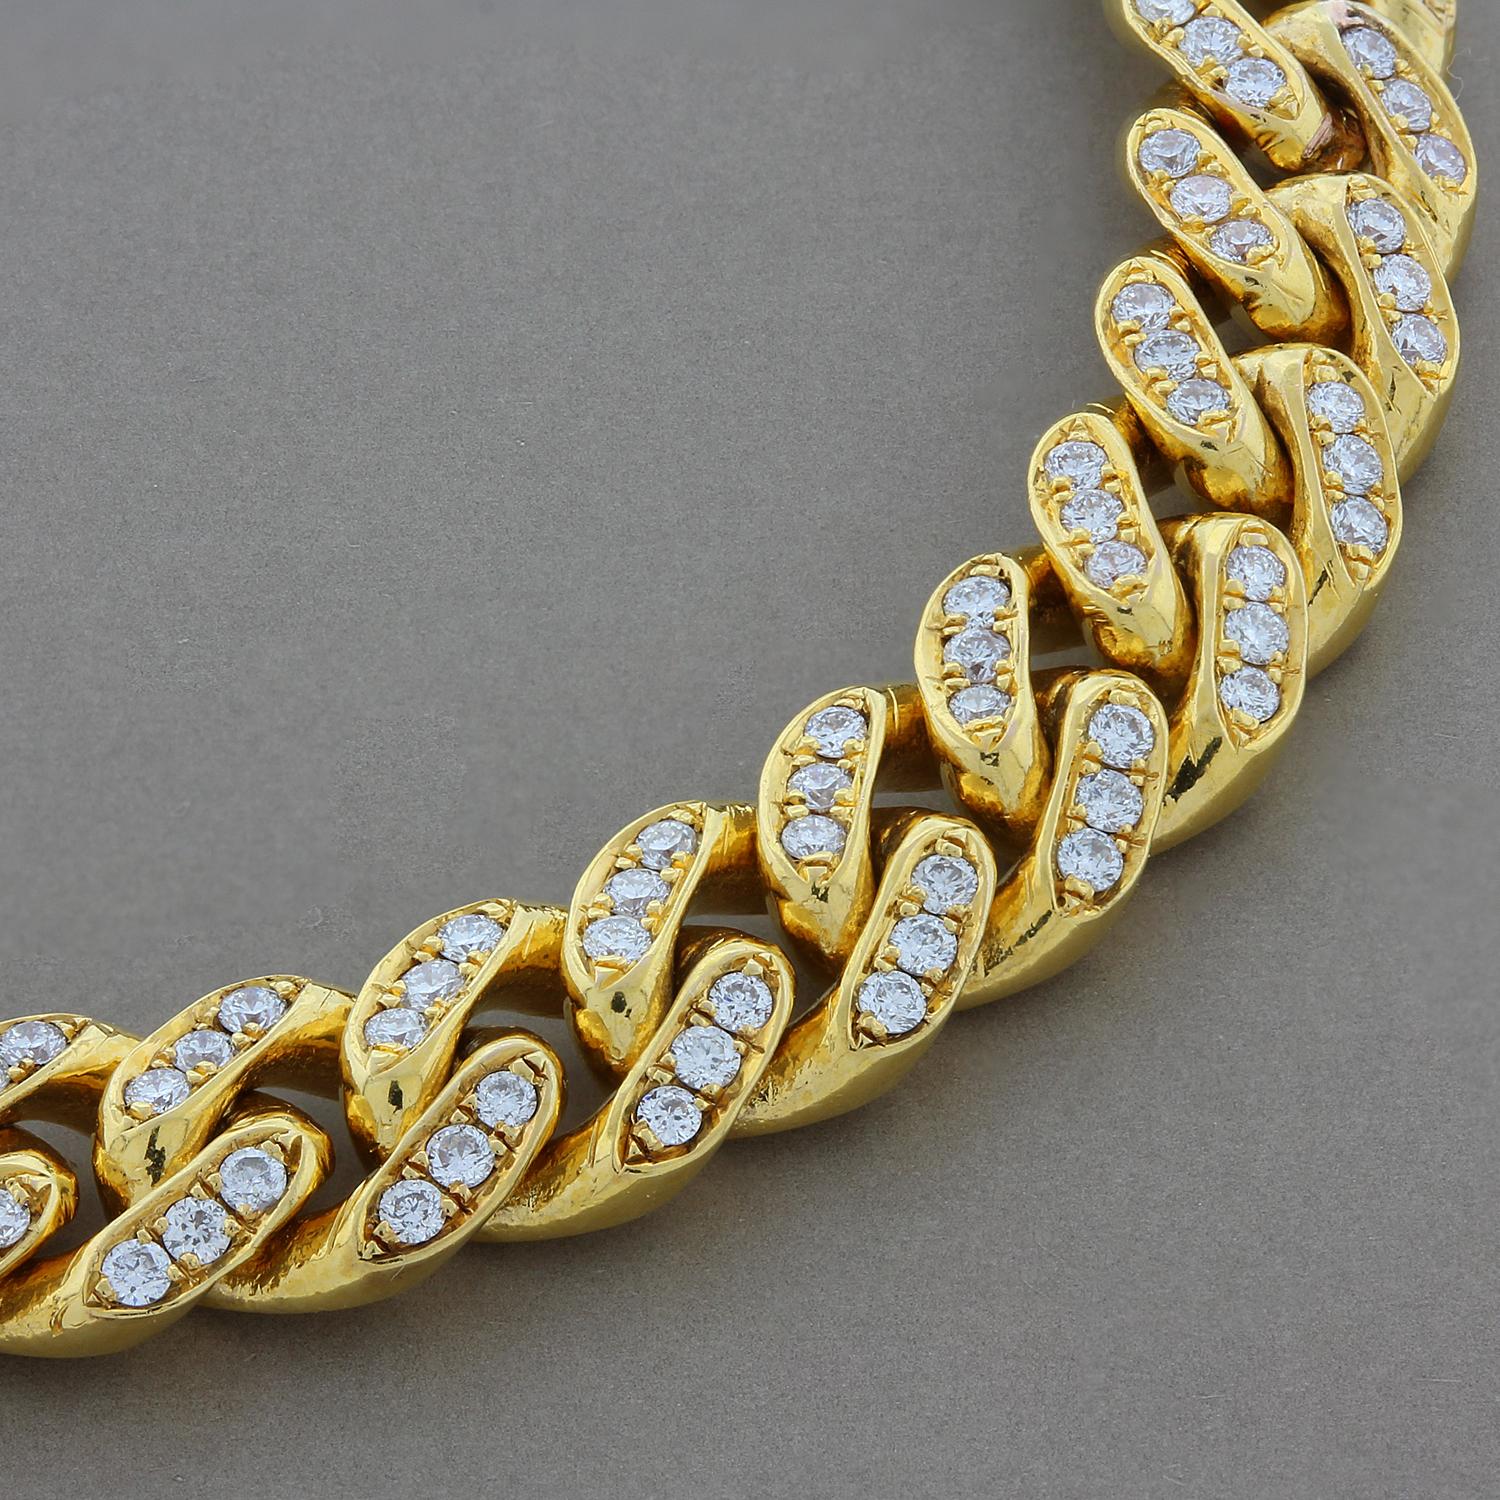 Ein perfektes kubanisches Gliederarmband für Tag und Nacht.  Es verfügt über 2,71 Karat runde Diamanten in VS-Qualität, die in jedes Glied aus 18 Karat Gelbgold eingefasst sind. Das Armband wird mit einer Karabinerschließe geschlossen.

Passt für